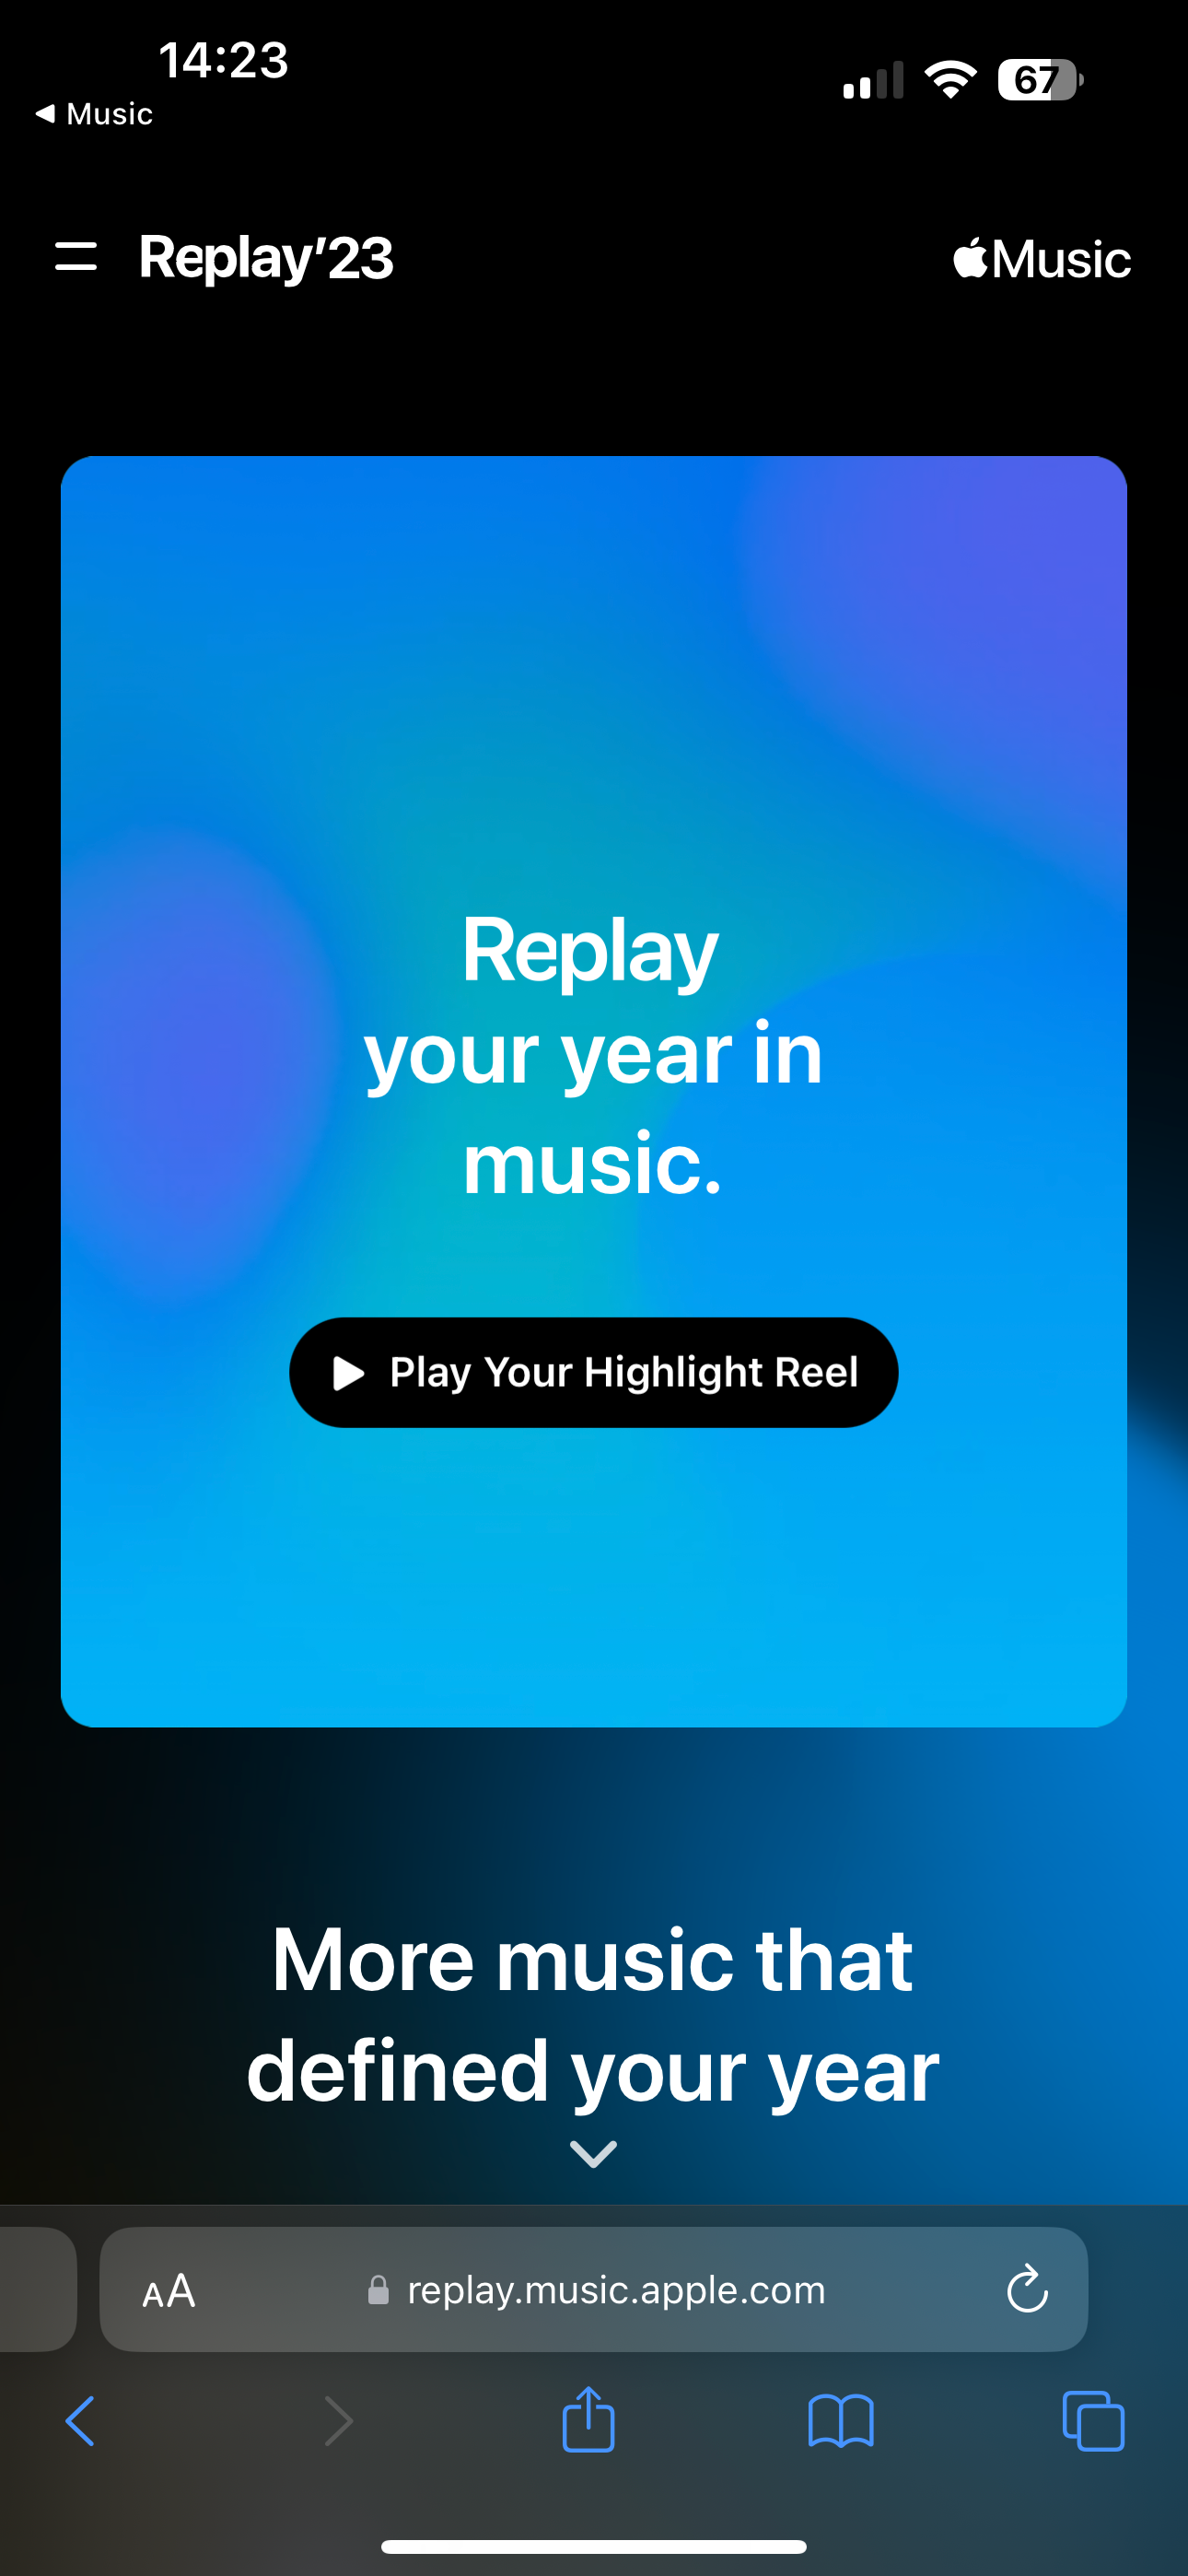 Spielen Sie Ihr Highlight-Reel Apple Music Replay 23 ab